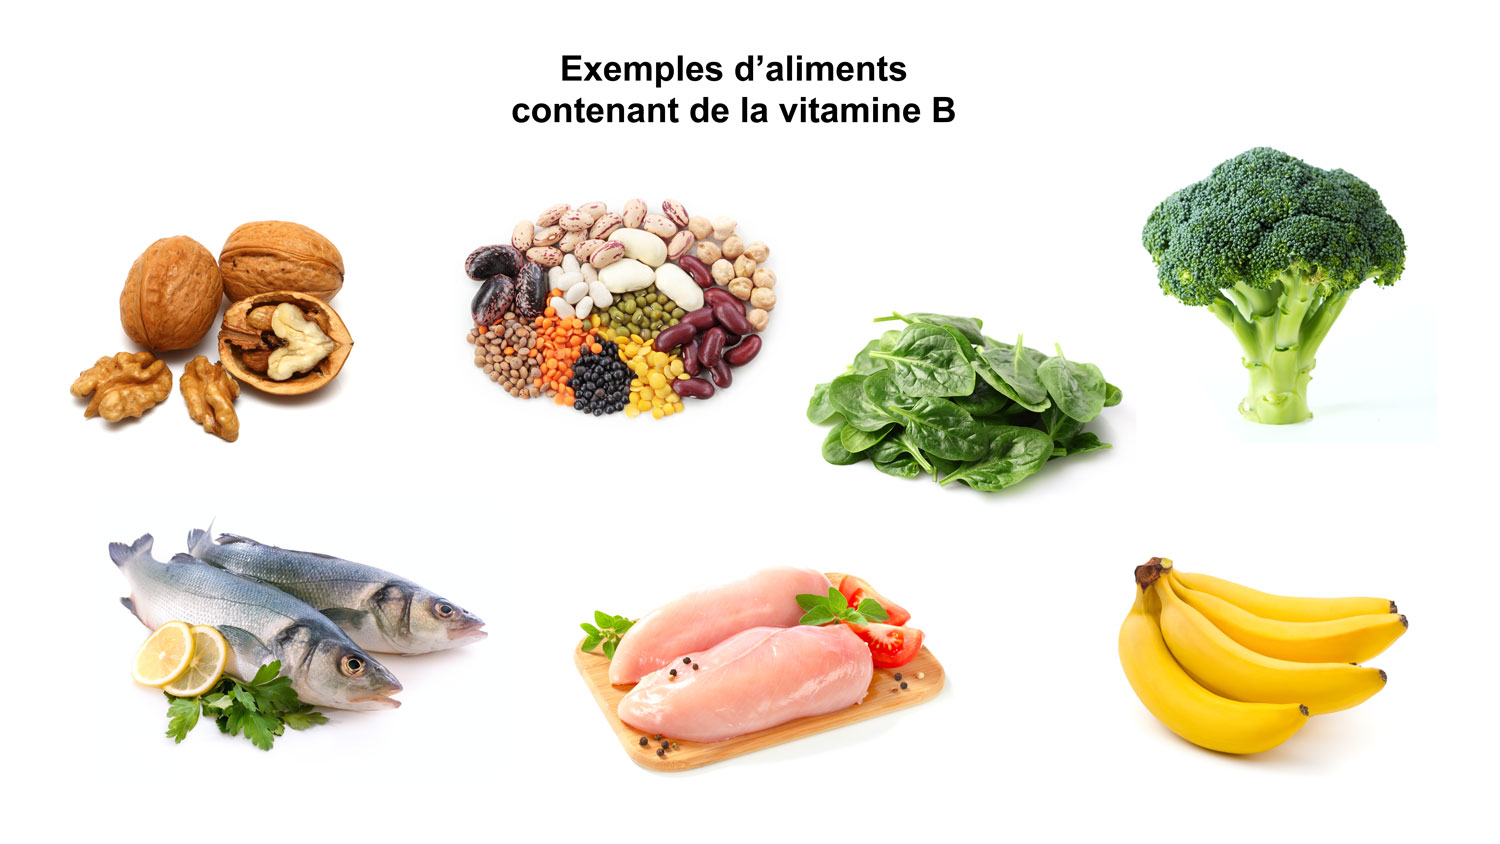 Exemples d'aliments contenant de la vitamine B.